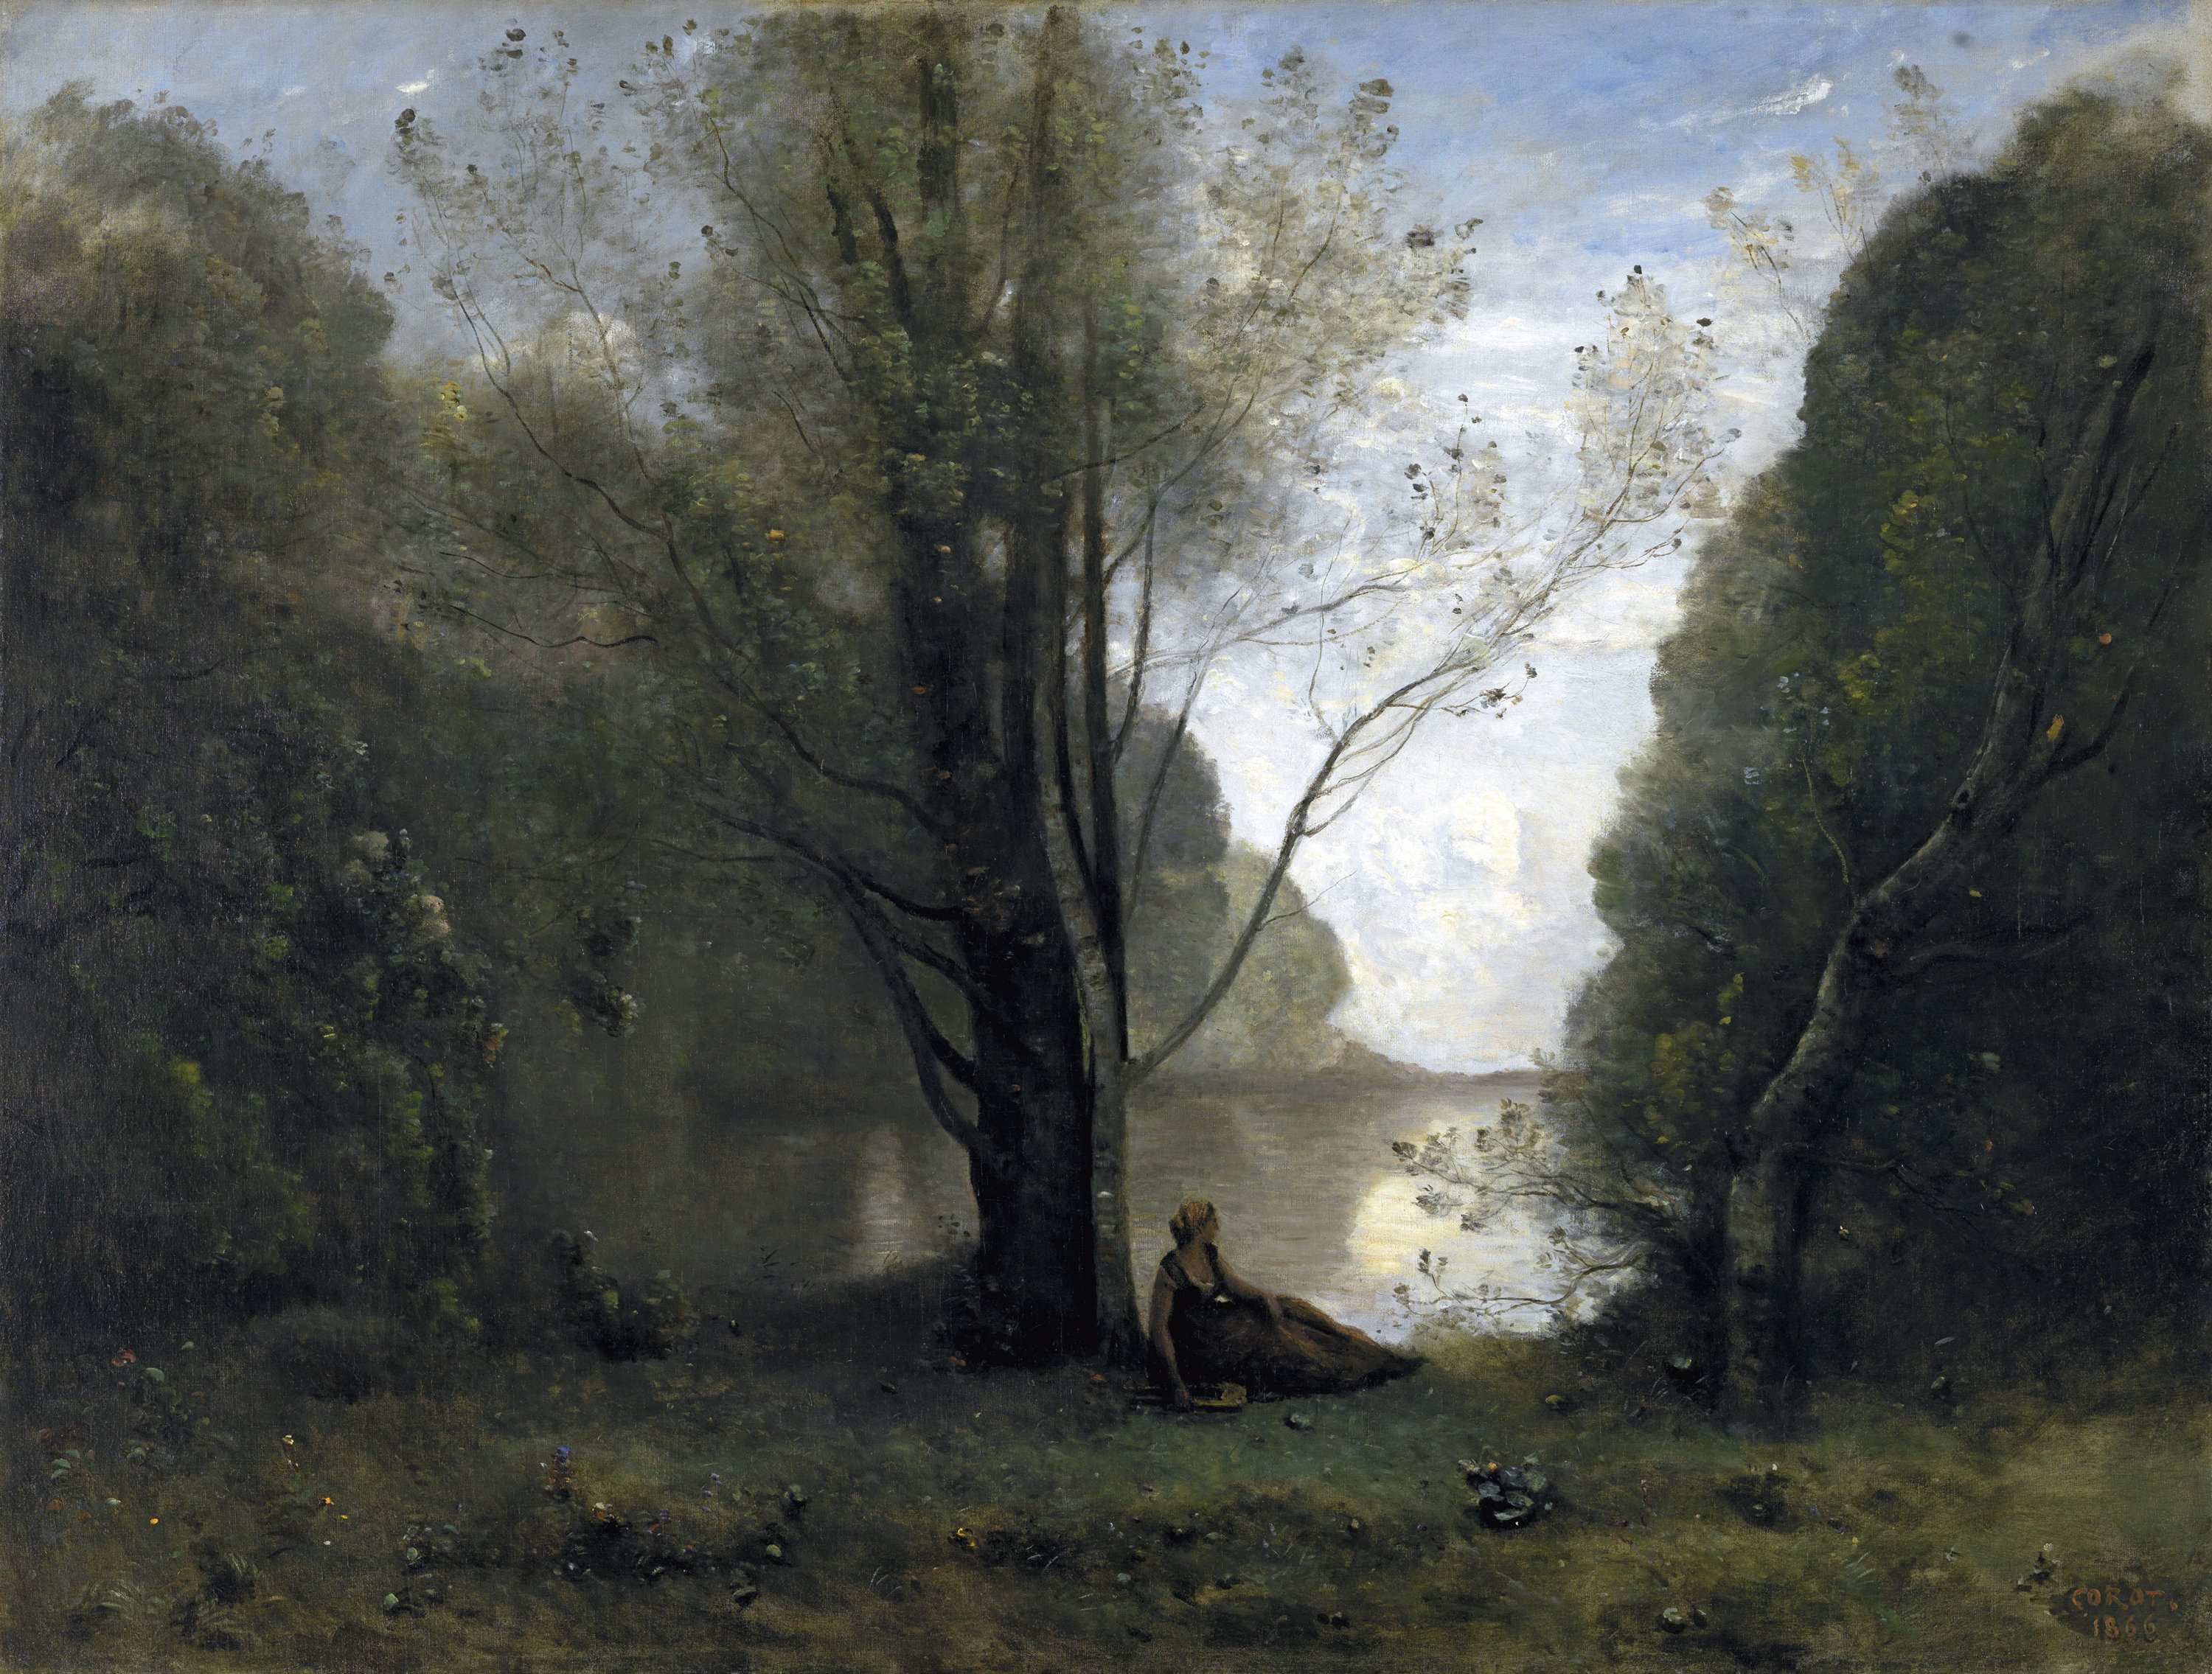 Solitude. Recollection of Vigen,  Limousin. La Soledad. Recuerdo de Vigen, Limusín, 1866